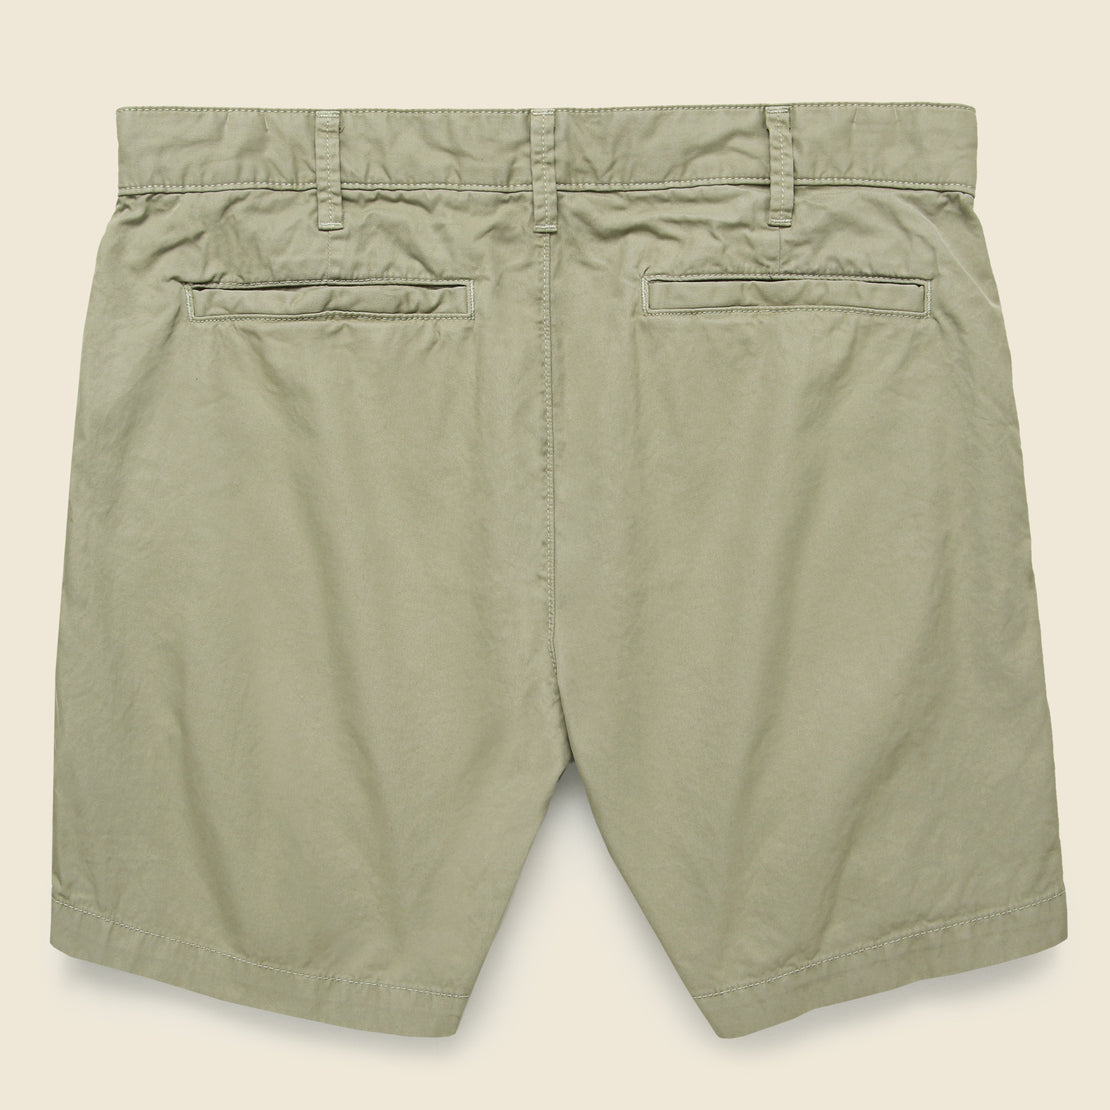 6-inch Twill Bermuda Short - Khaki